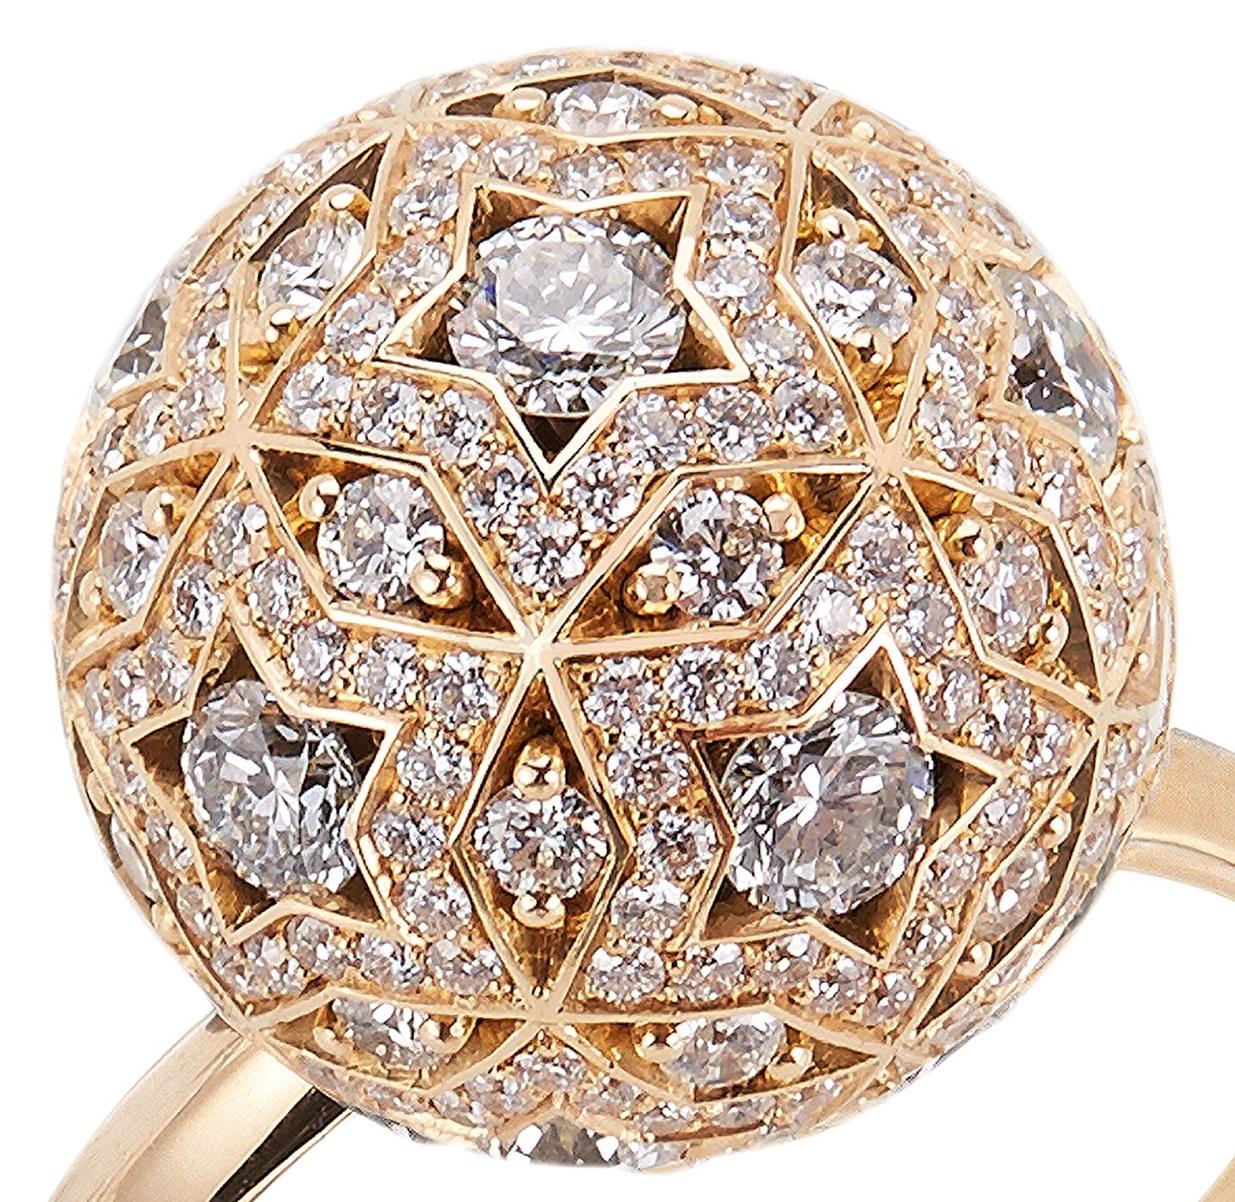 Ein einzigartiges Ringdesign, das von den Konstellationen des Nachthimmels inspiriert ist und mit Hirsh Celestial Movement geschaffen wurde.

- 256 Diamanten im Rundschliff mit einem Gesamtgewicht von ca. 2,15 Karat
- Hergestellt aus 18 Karat